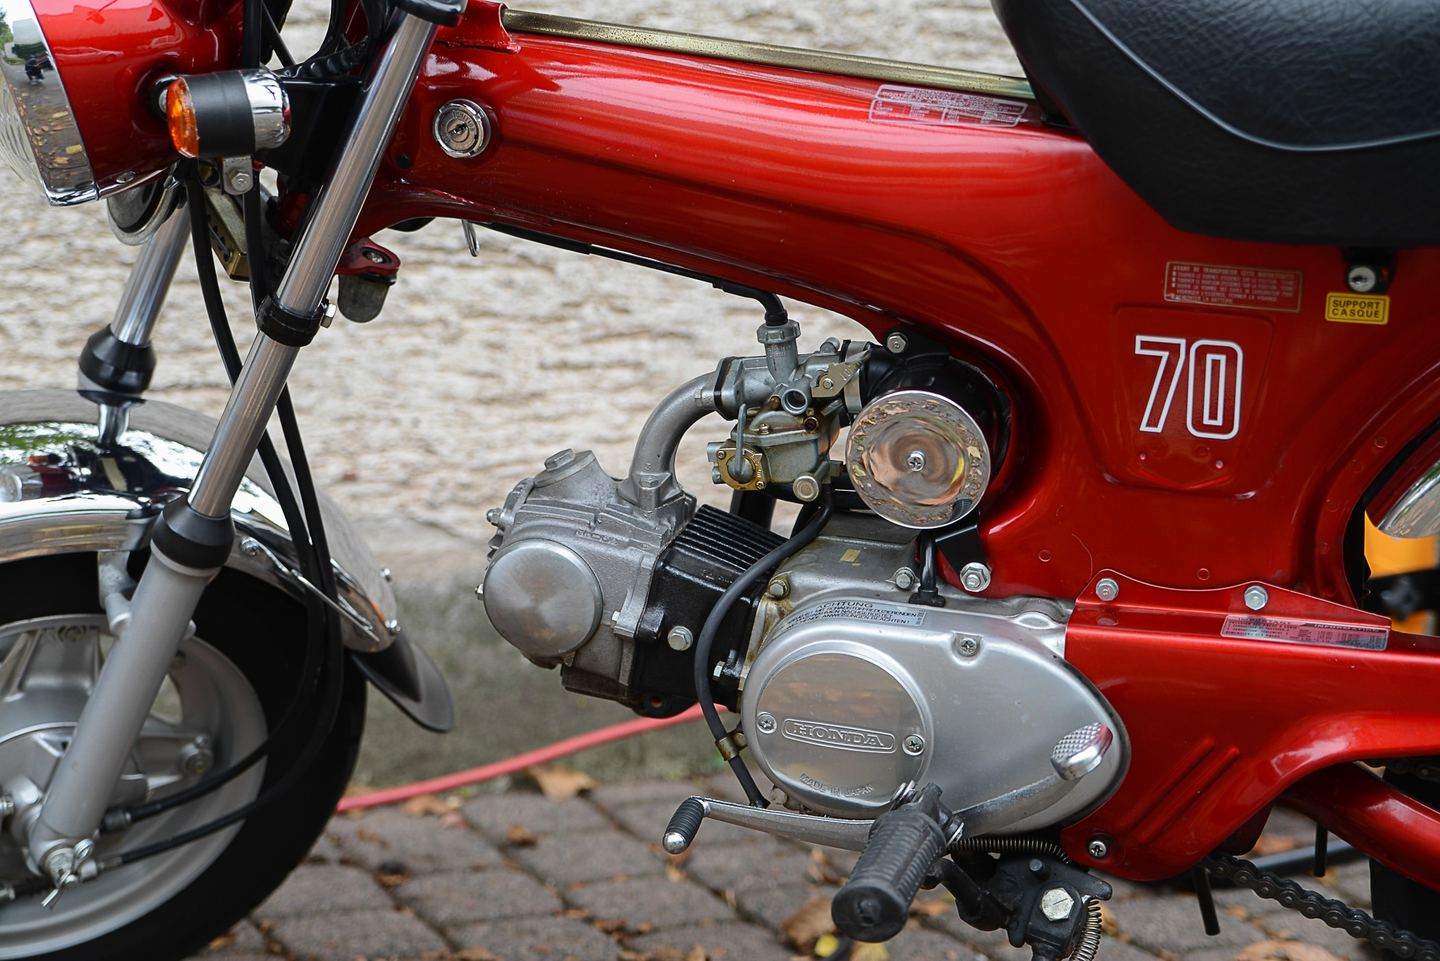 Honda Dax (1969-1999) - Motorrad für die Westentasche